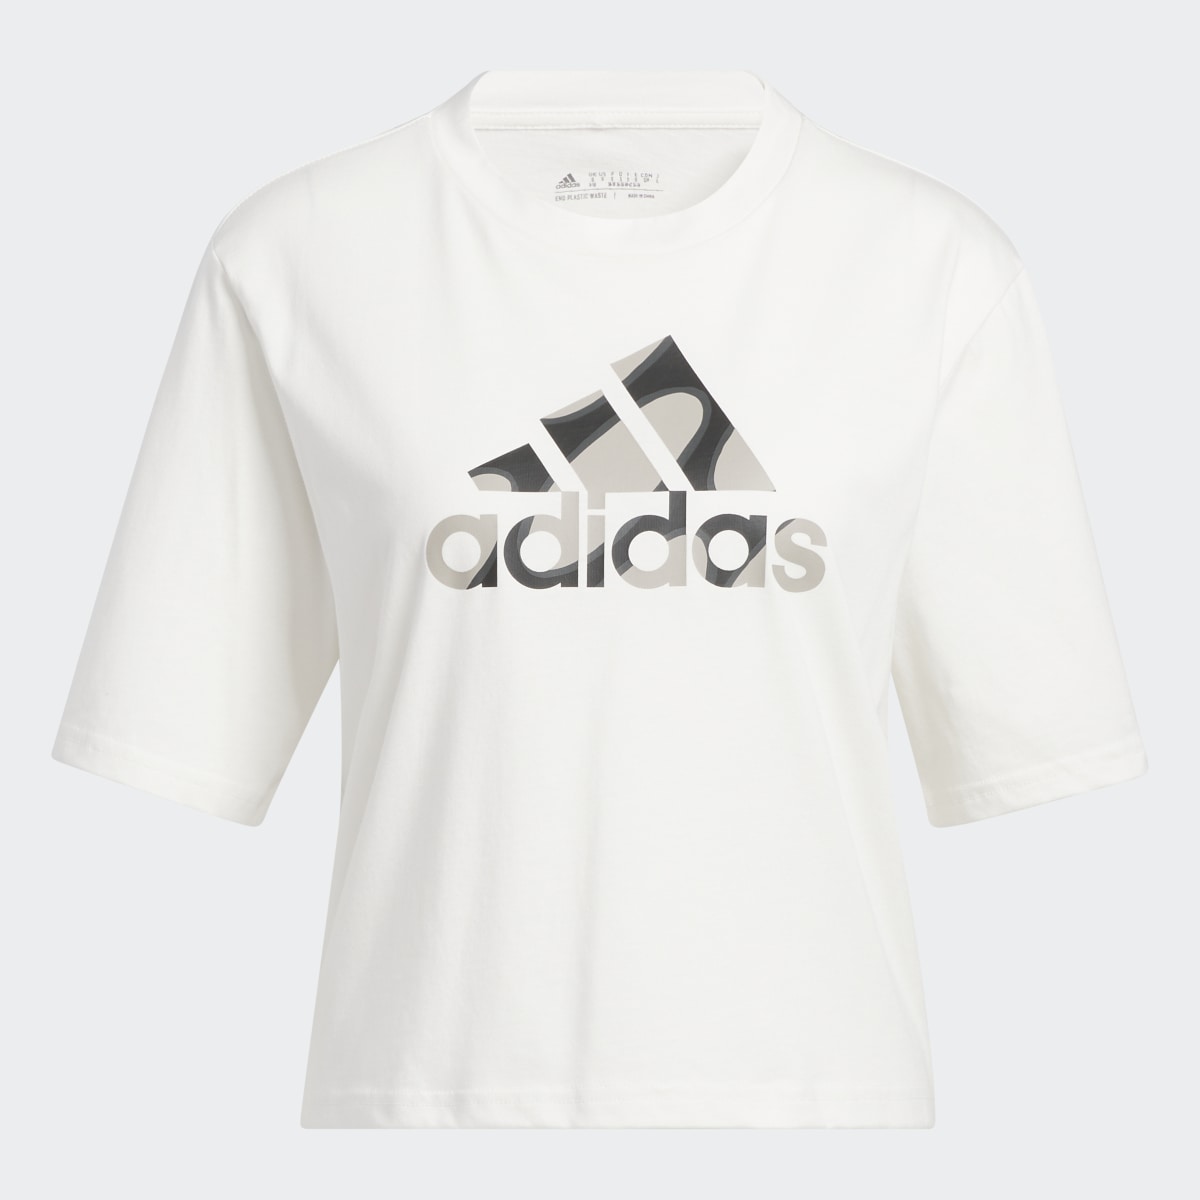 Adidas Marimekko Crop T-Shirt. 5